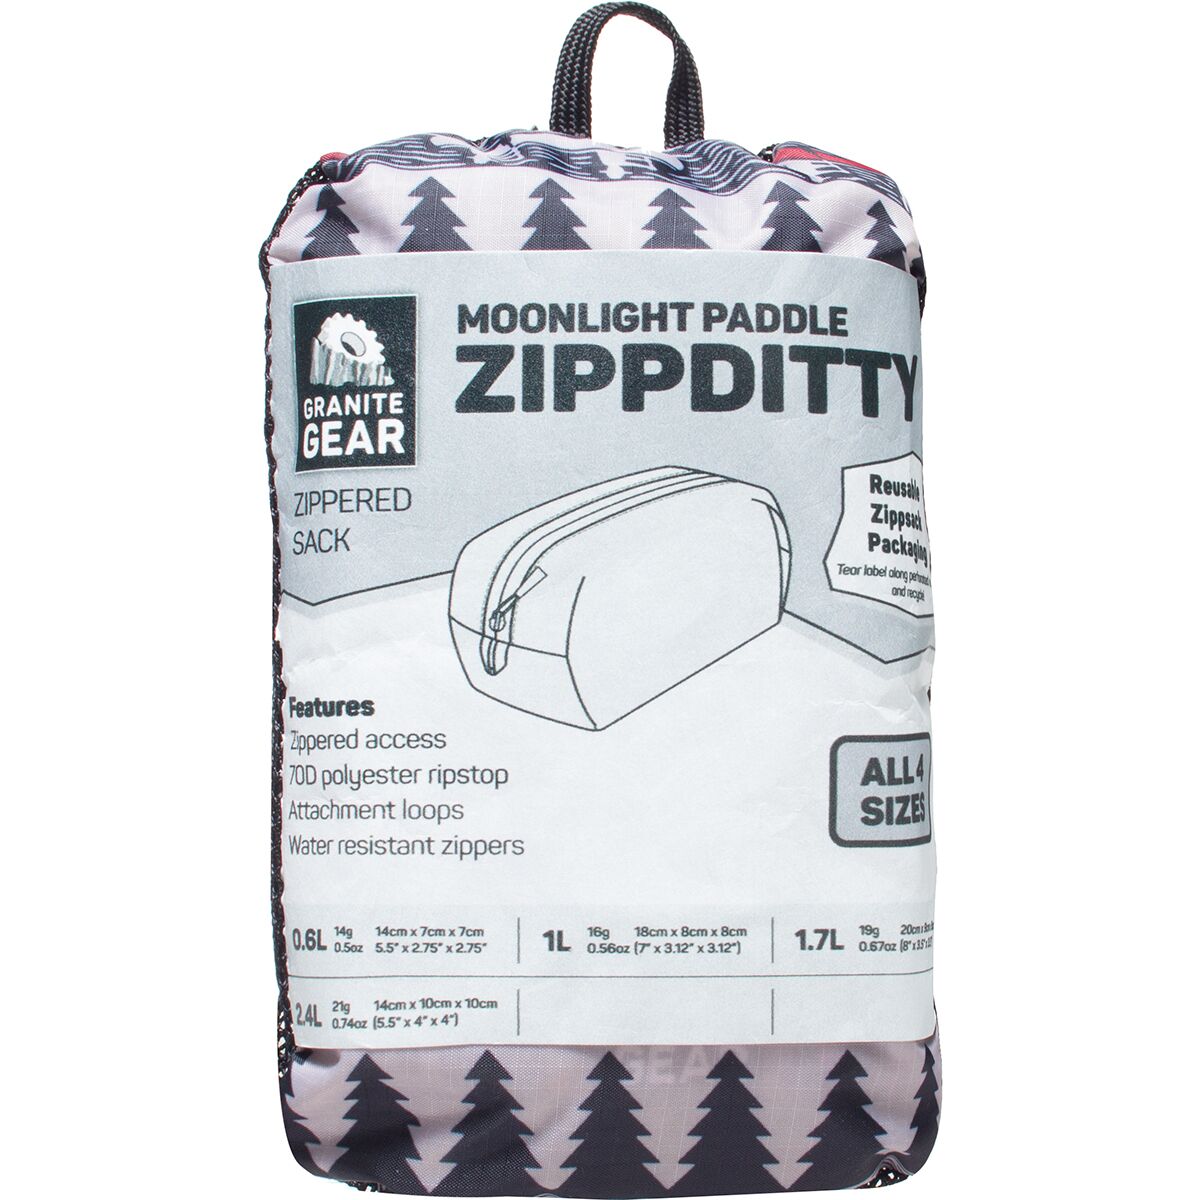 Granite Gear Zippditty Sack - 4-Pack